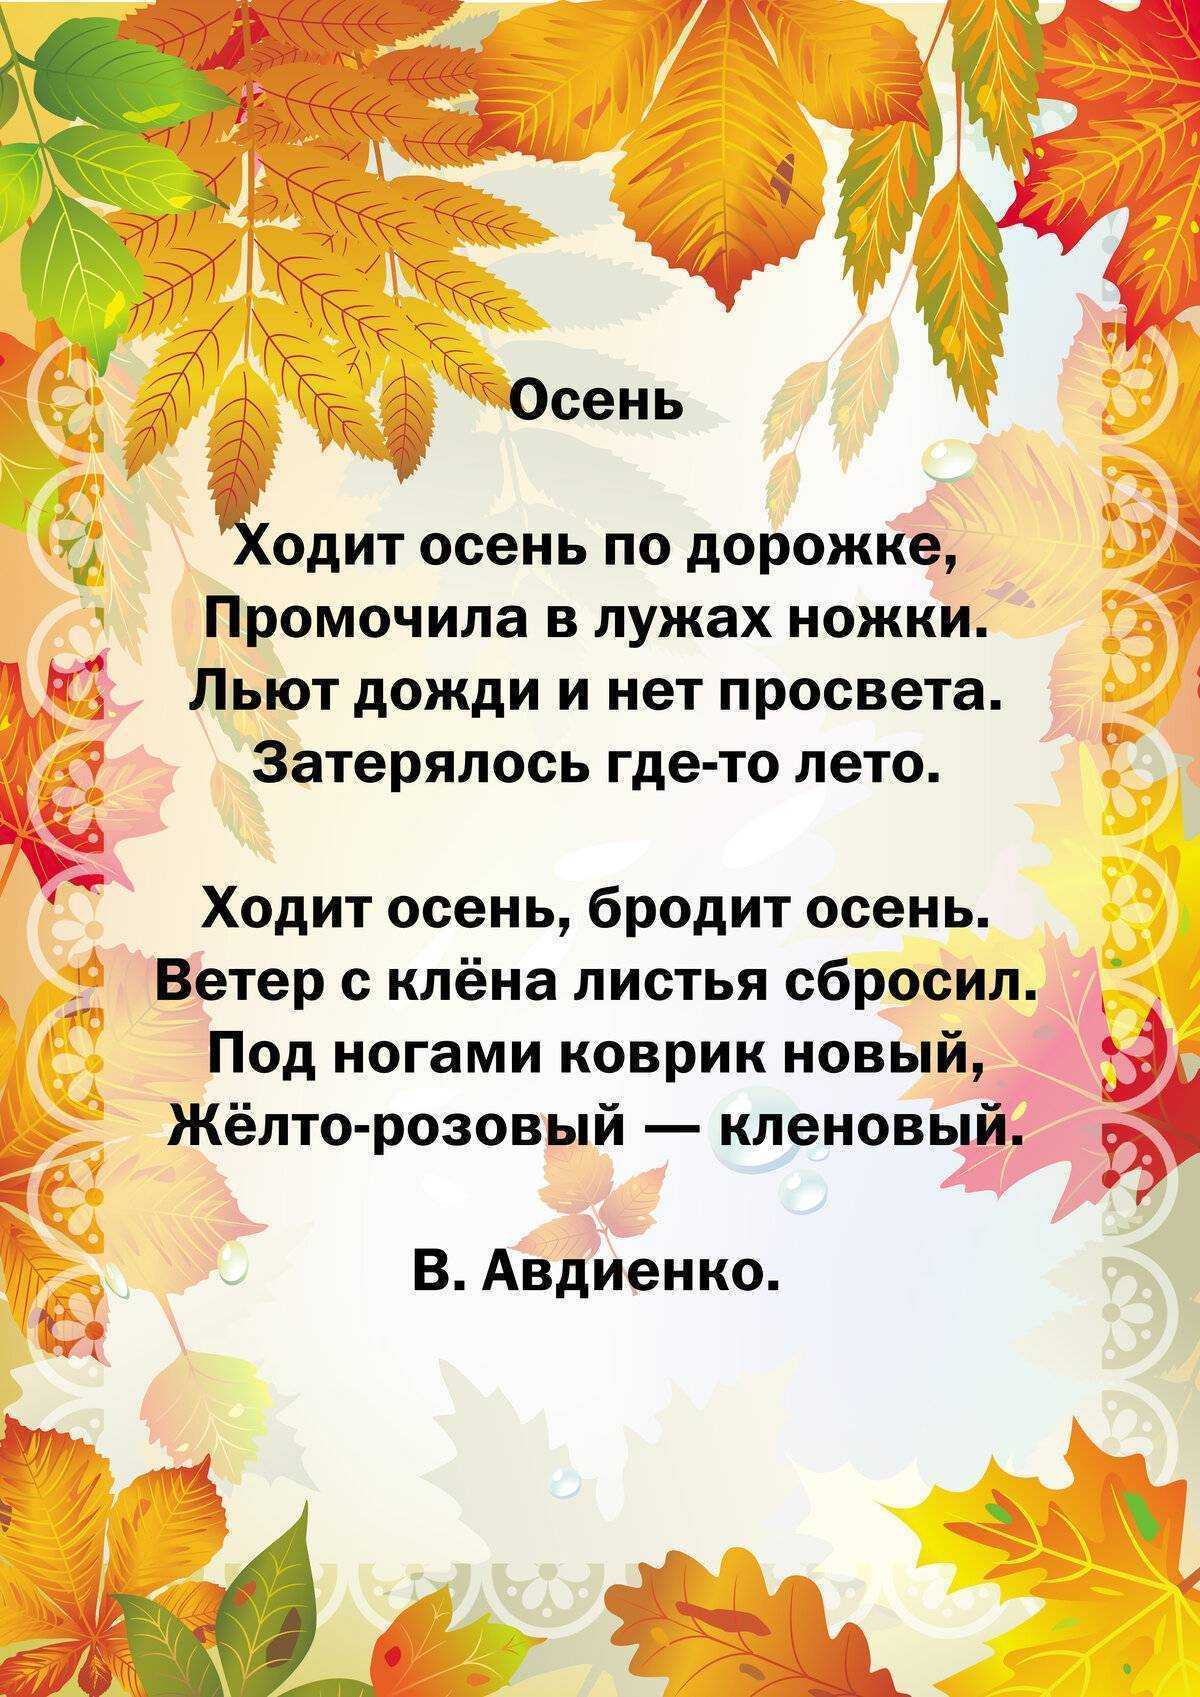 Пушкин - осень: читать стихотворение, текст стиха полностью александра сергеевича пушкина - рустих